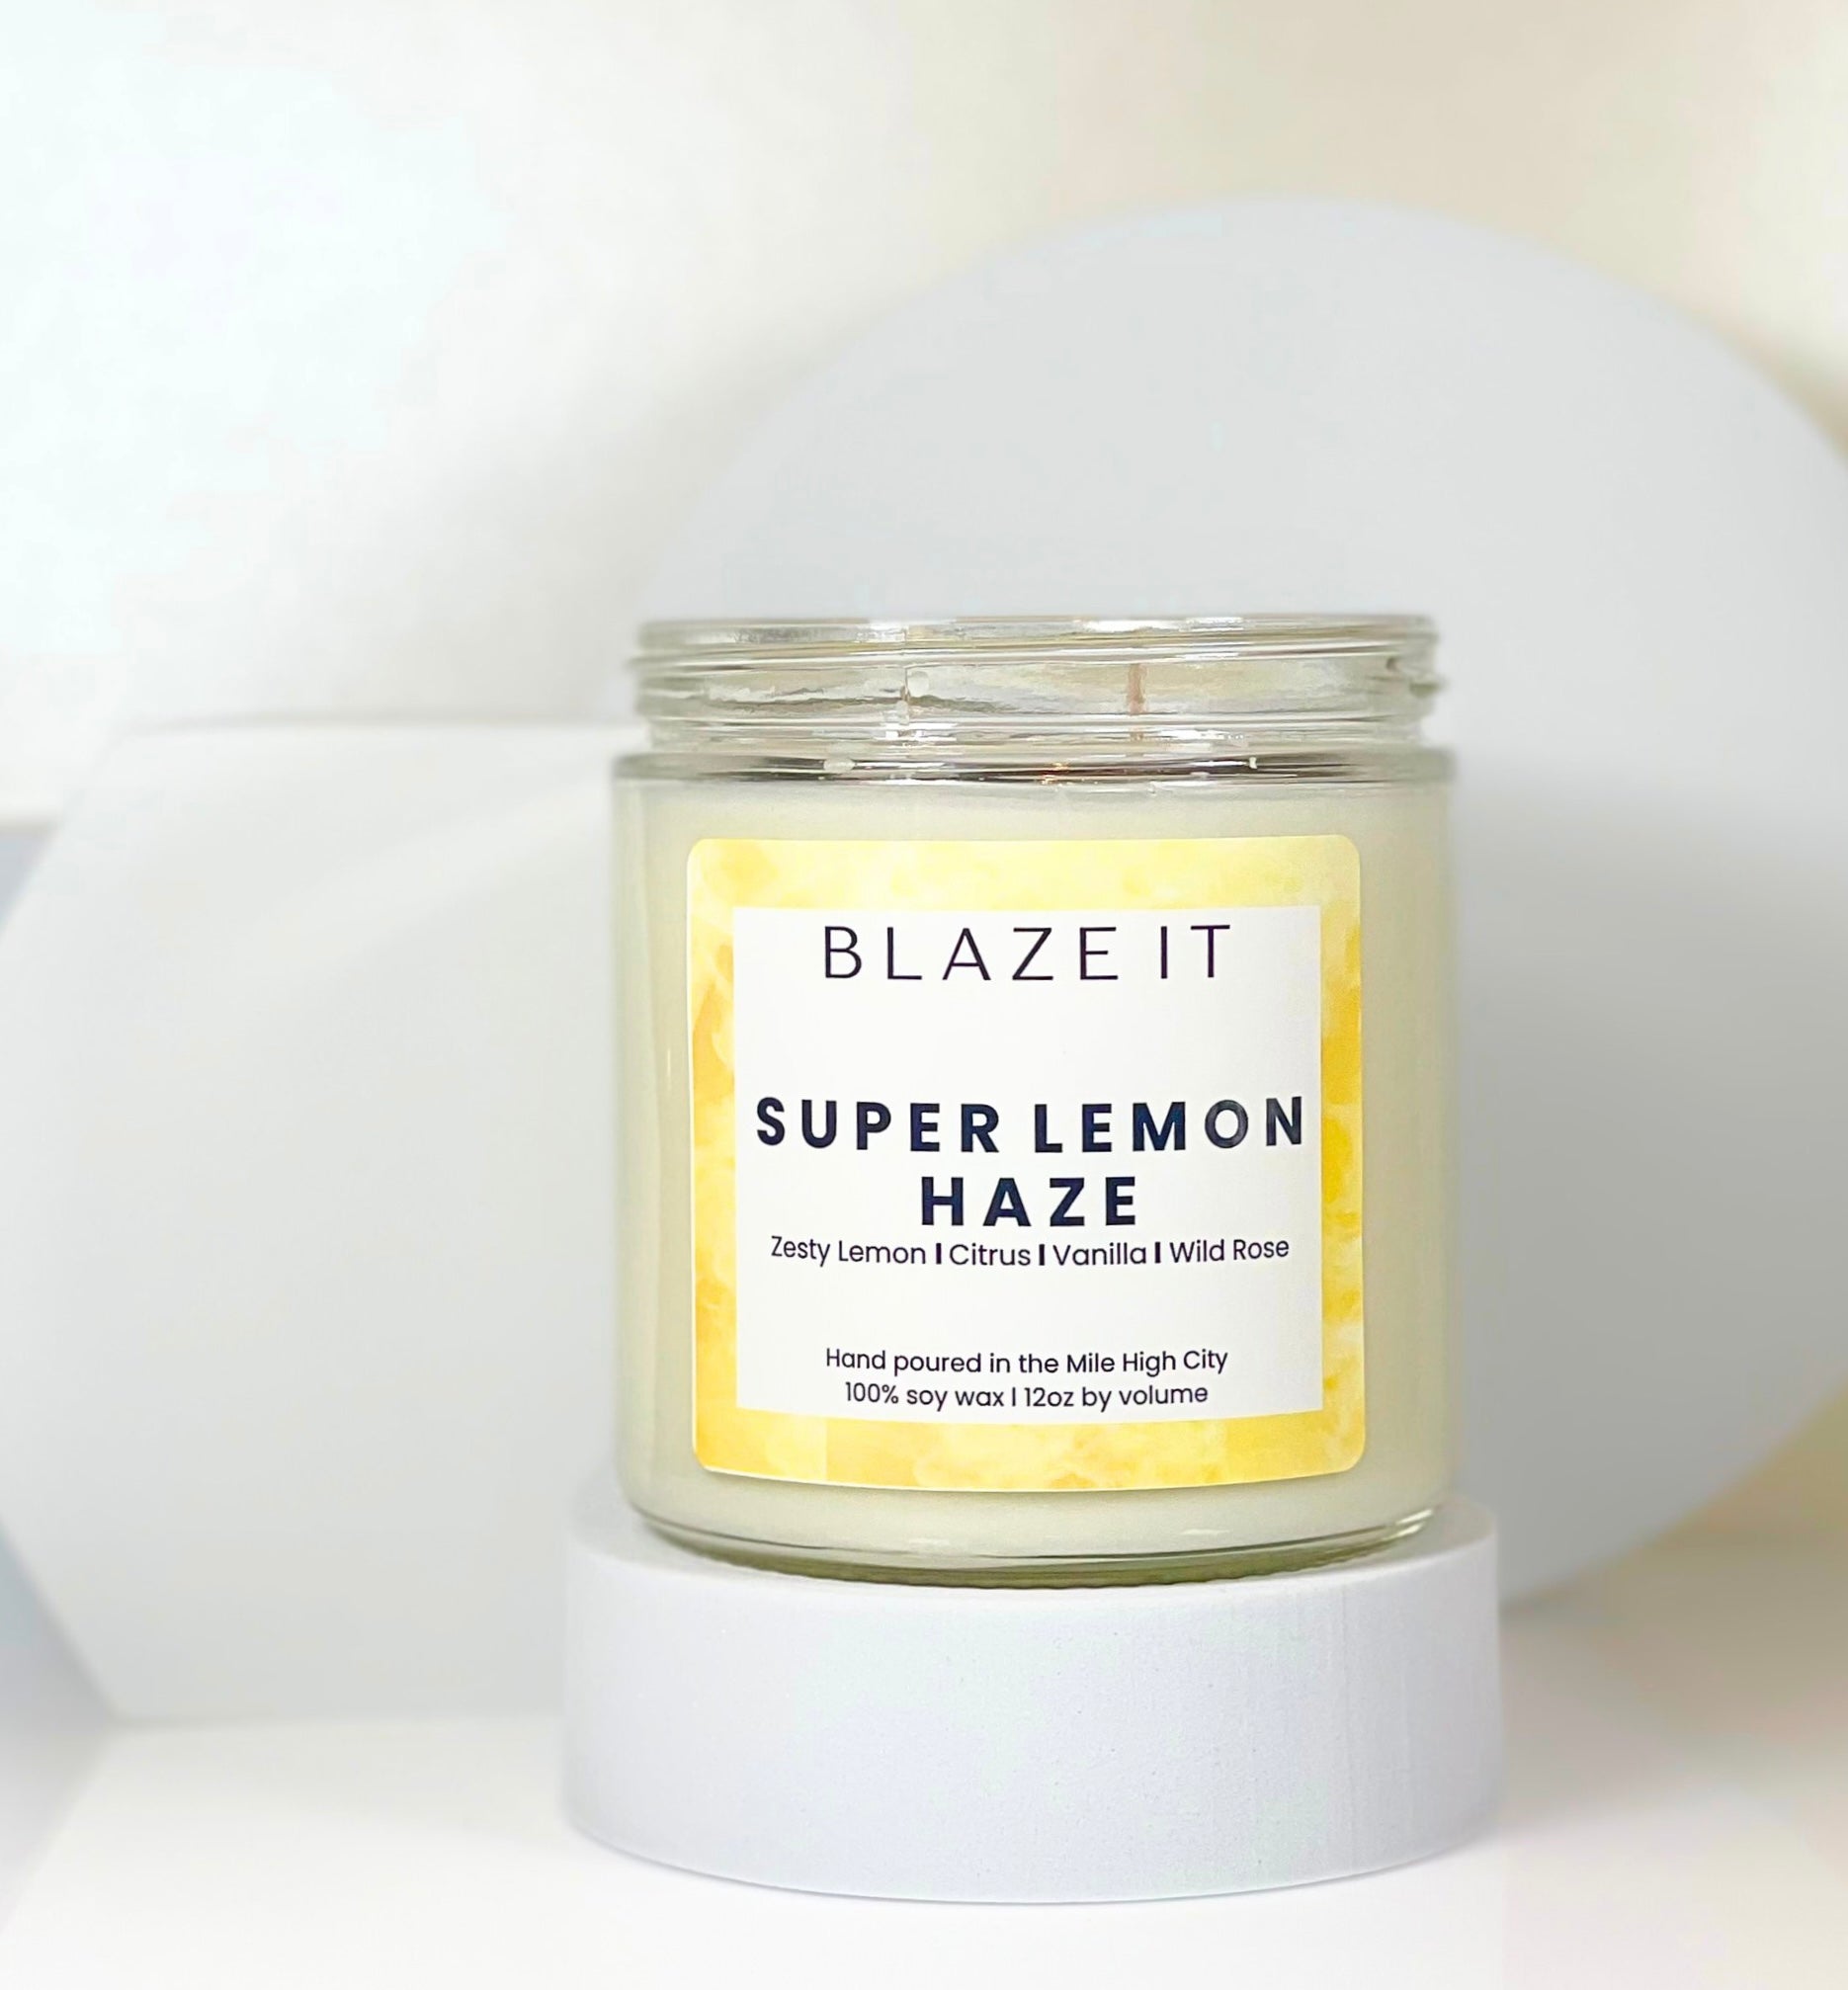 Super Lemon Haze candle - Blaze It Candle Co